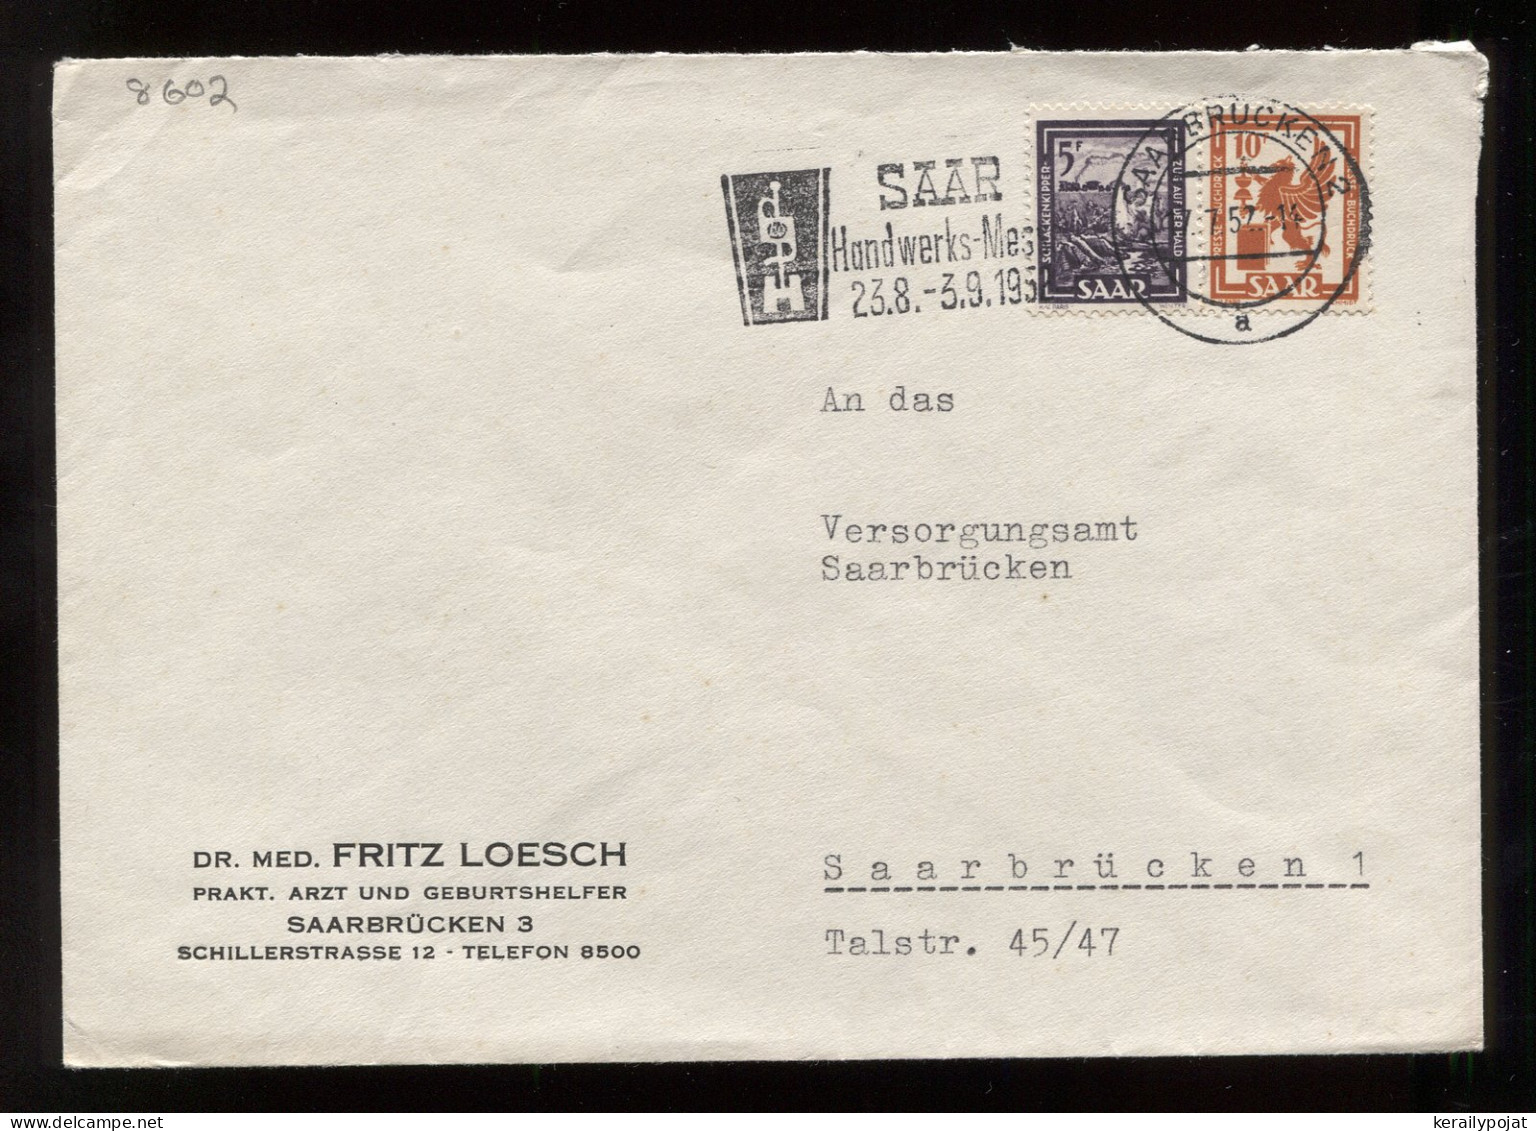 Saar 1957 Saarbrucken 2 Slogan Cancellation Cover__(8602) - Storia Postale